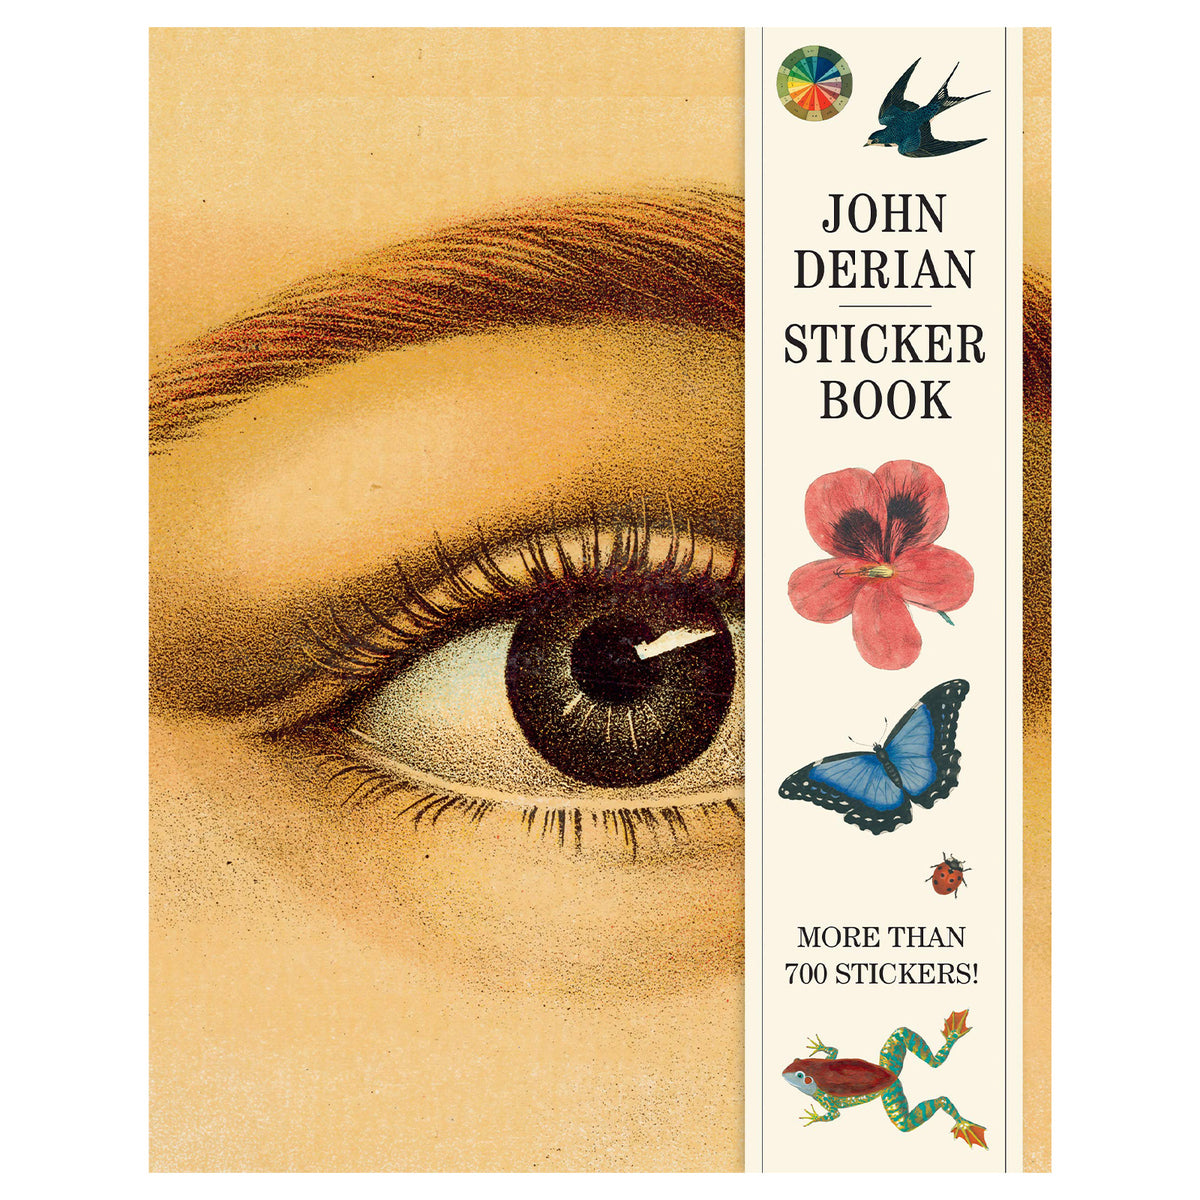 John Derian Sticker Book front cover.